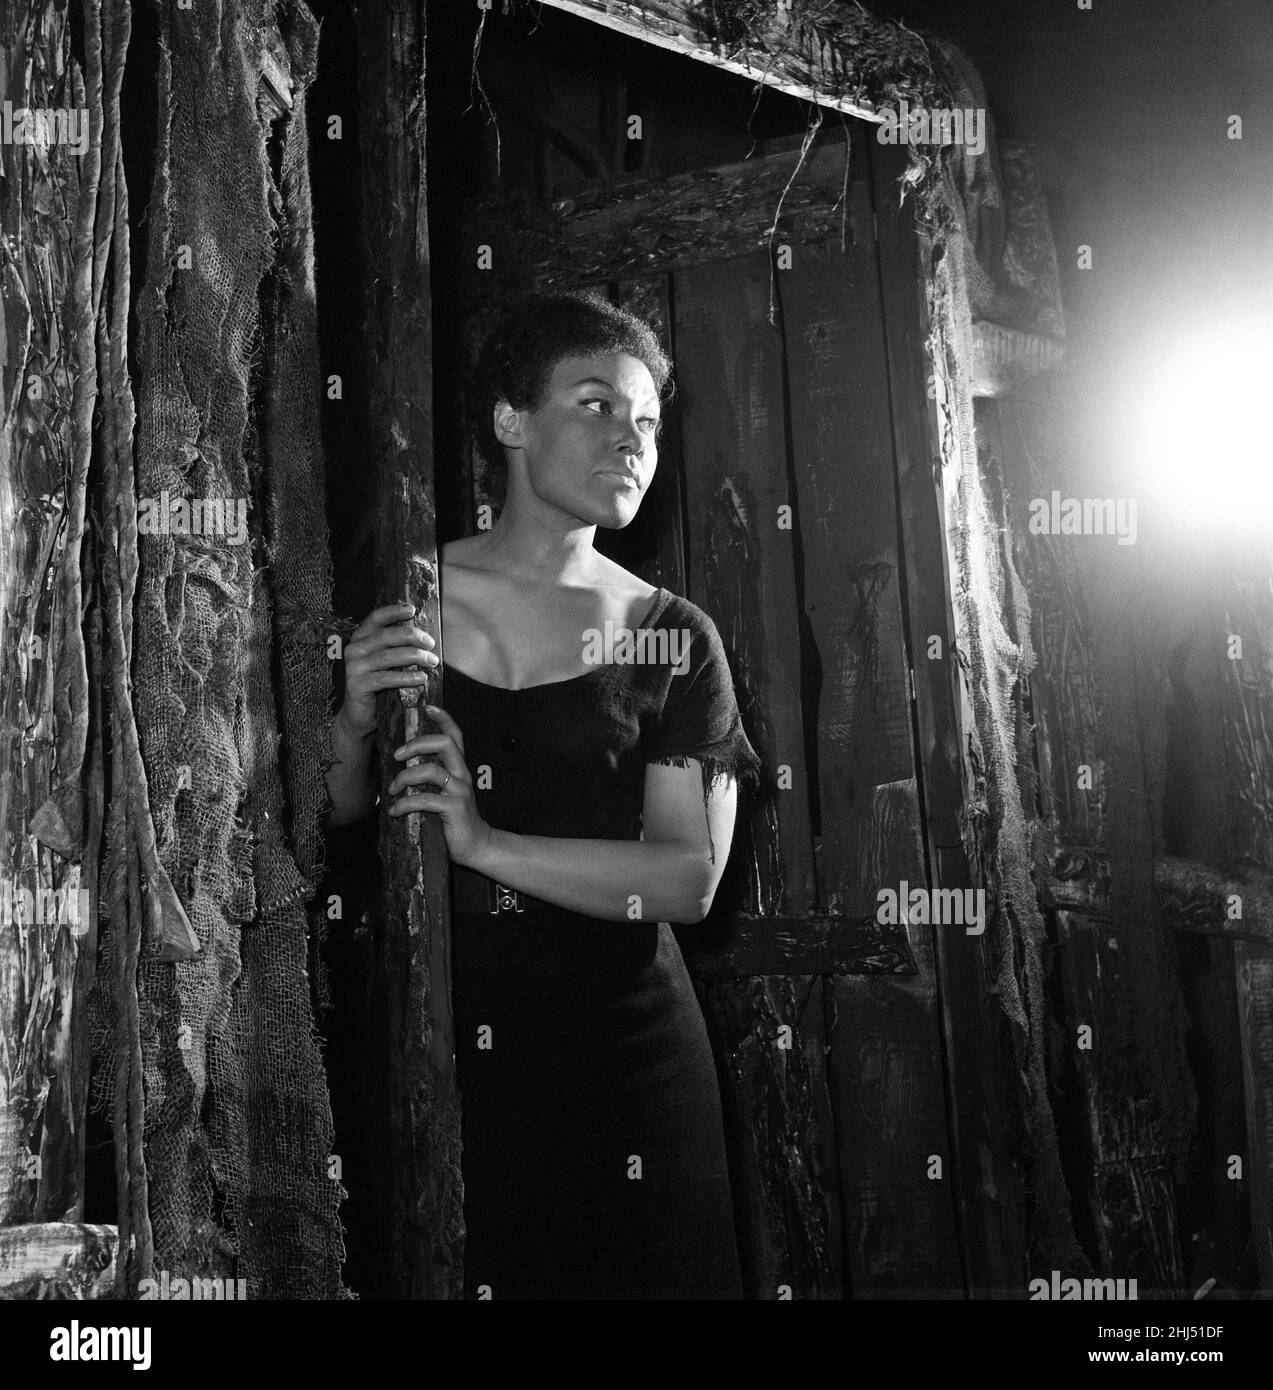 Eine Probe von 'Flesh to a Tiger', einem westindischen Stück, das am 21st. Mai im Royal Court Theatre Premiere haben wird. Mit dabei ist Cleo Laine, obwohl sie als Sängerin bekannt ist, dies ist ihre erste dramatische Rolle, sie spielt 'della'. Im Bild: Cleo Laine. 20th Mai 1958. Stockfoto